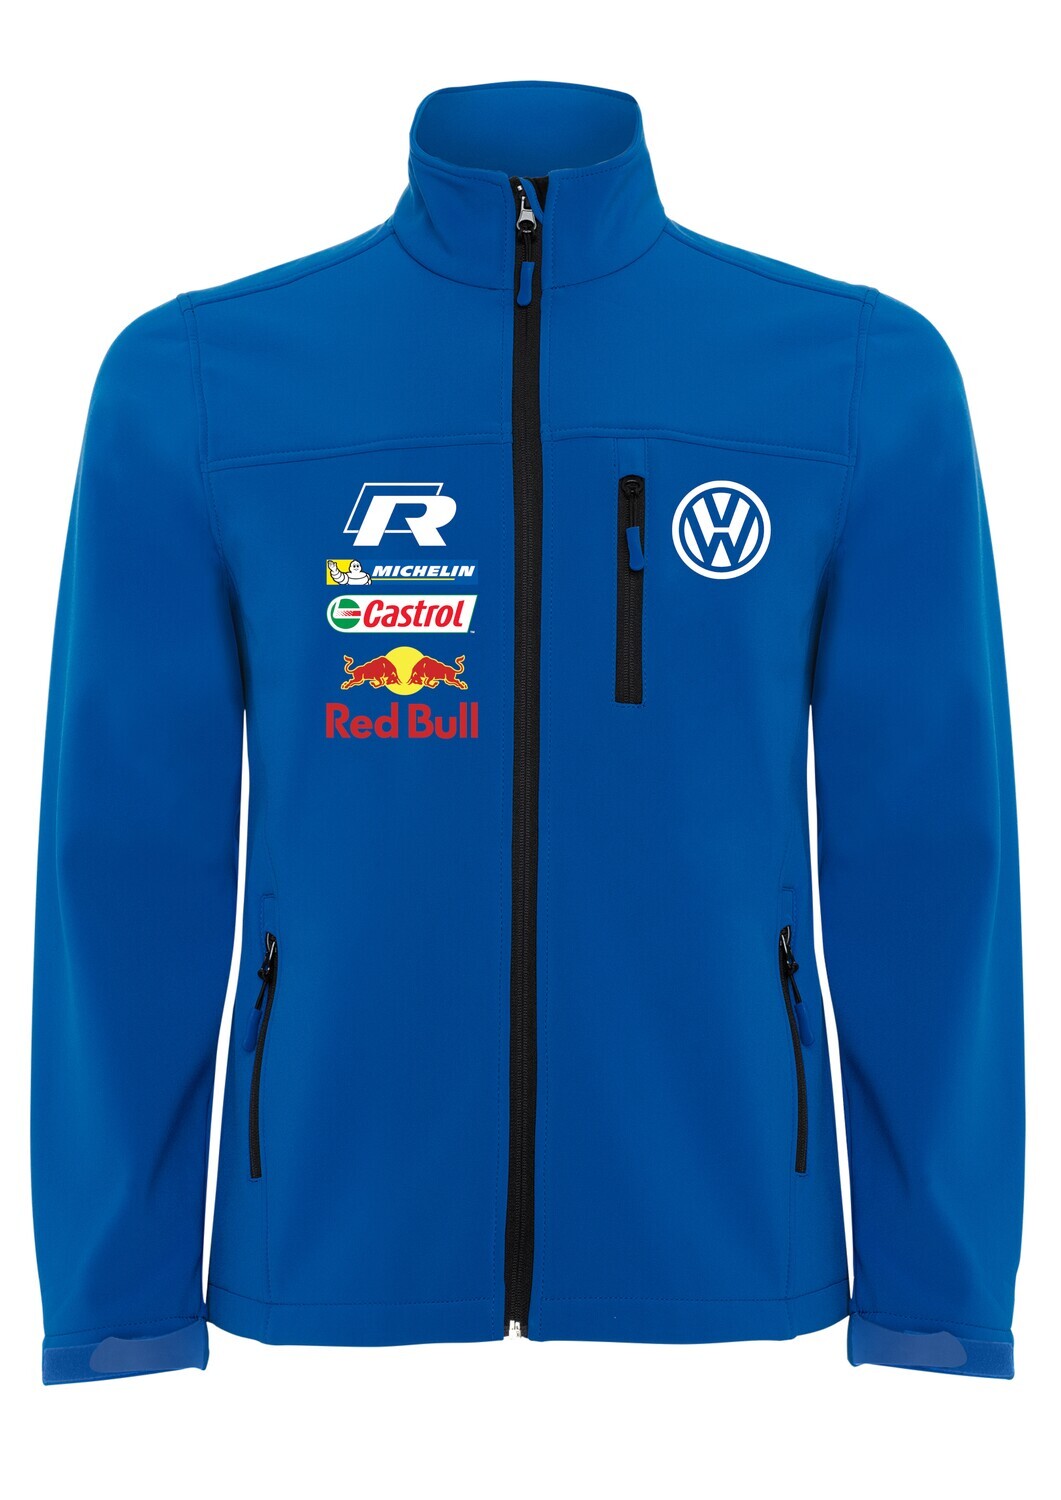 Volkswagen Rline Racing softshell jacket